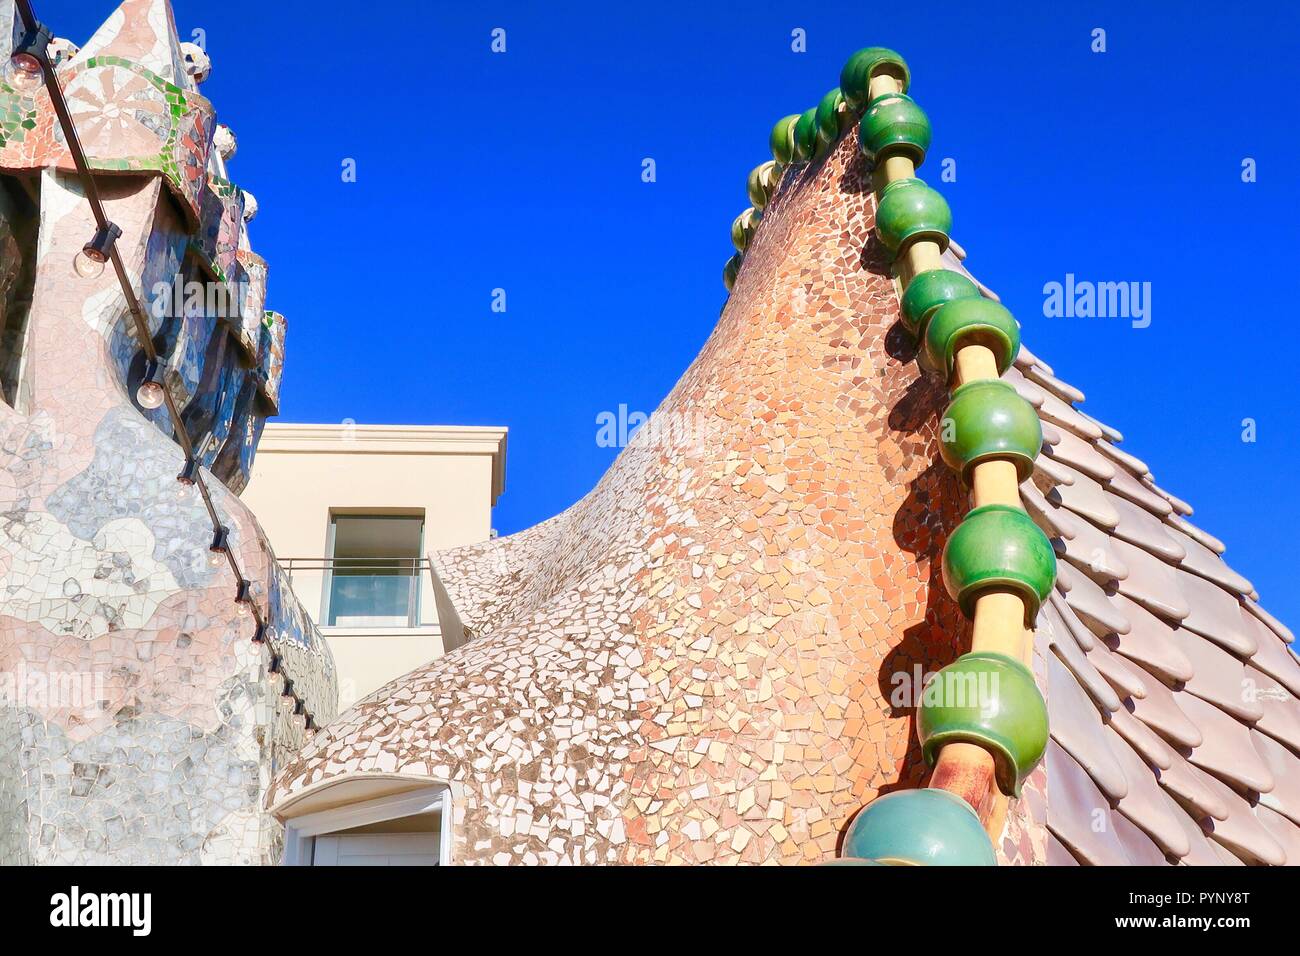 La Casa Batlló de Gaudi, Barcelone, Espagne. Lumineuse, ensoleillée matin d'automne. Octobre 2018. Banque D'Images